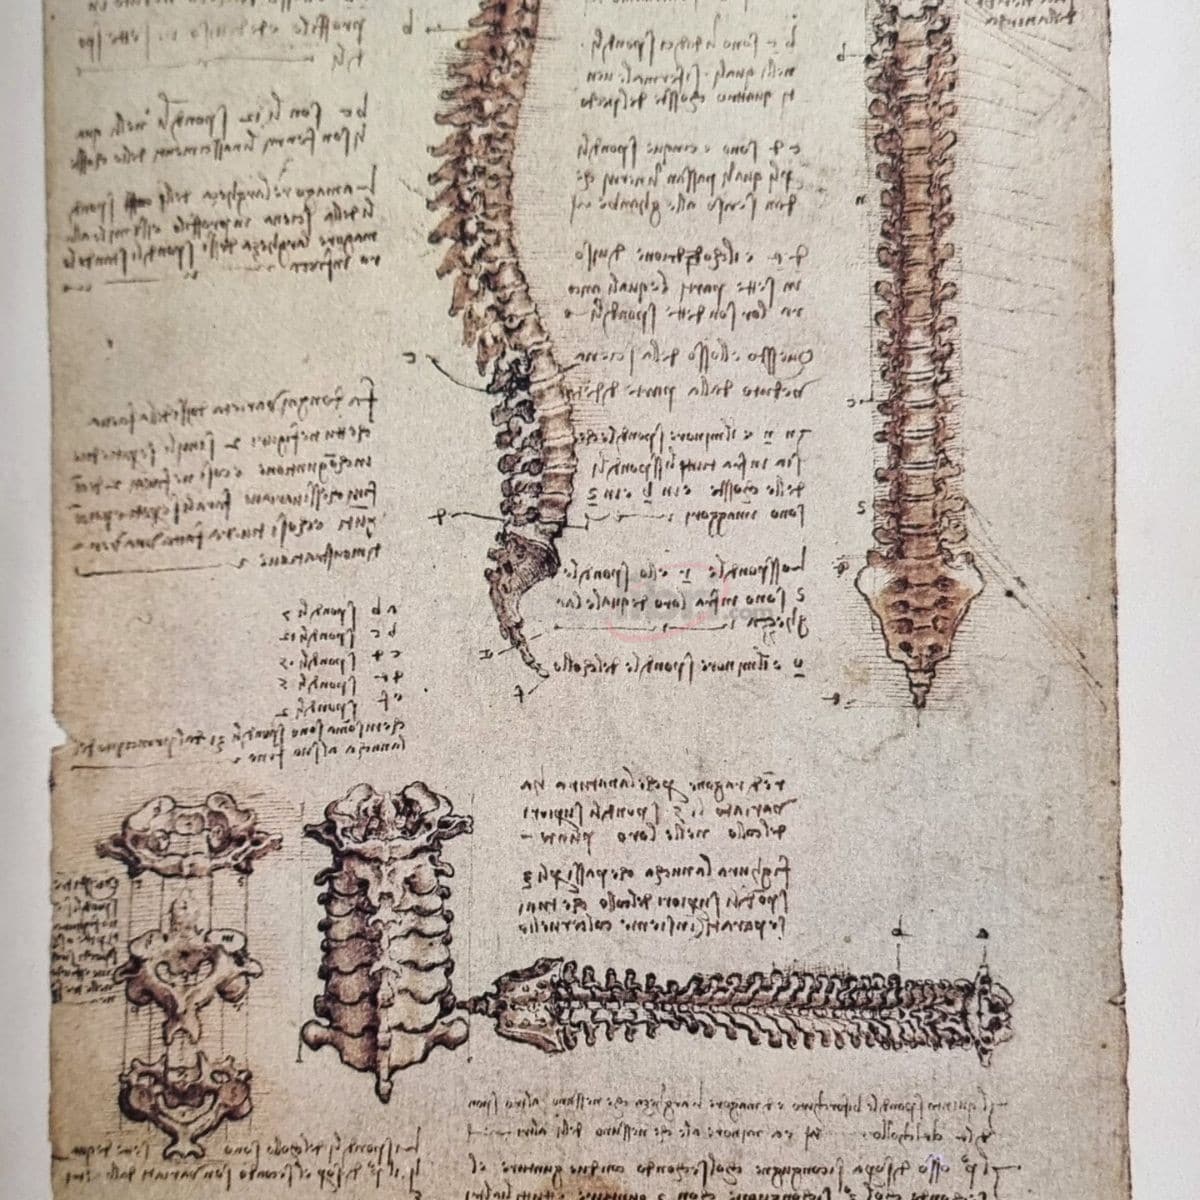 Leonardo da Vinci Disegni anatomici